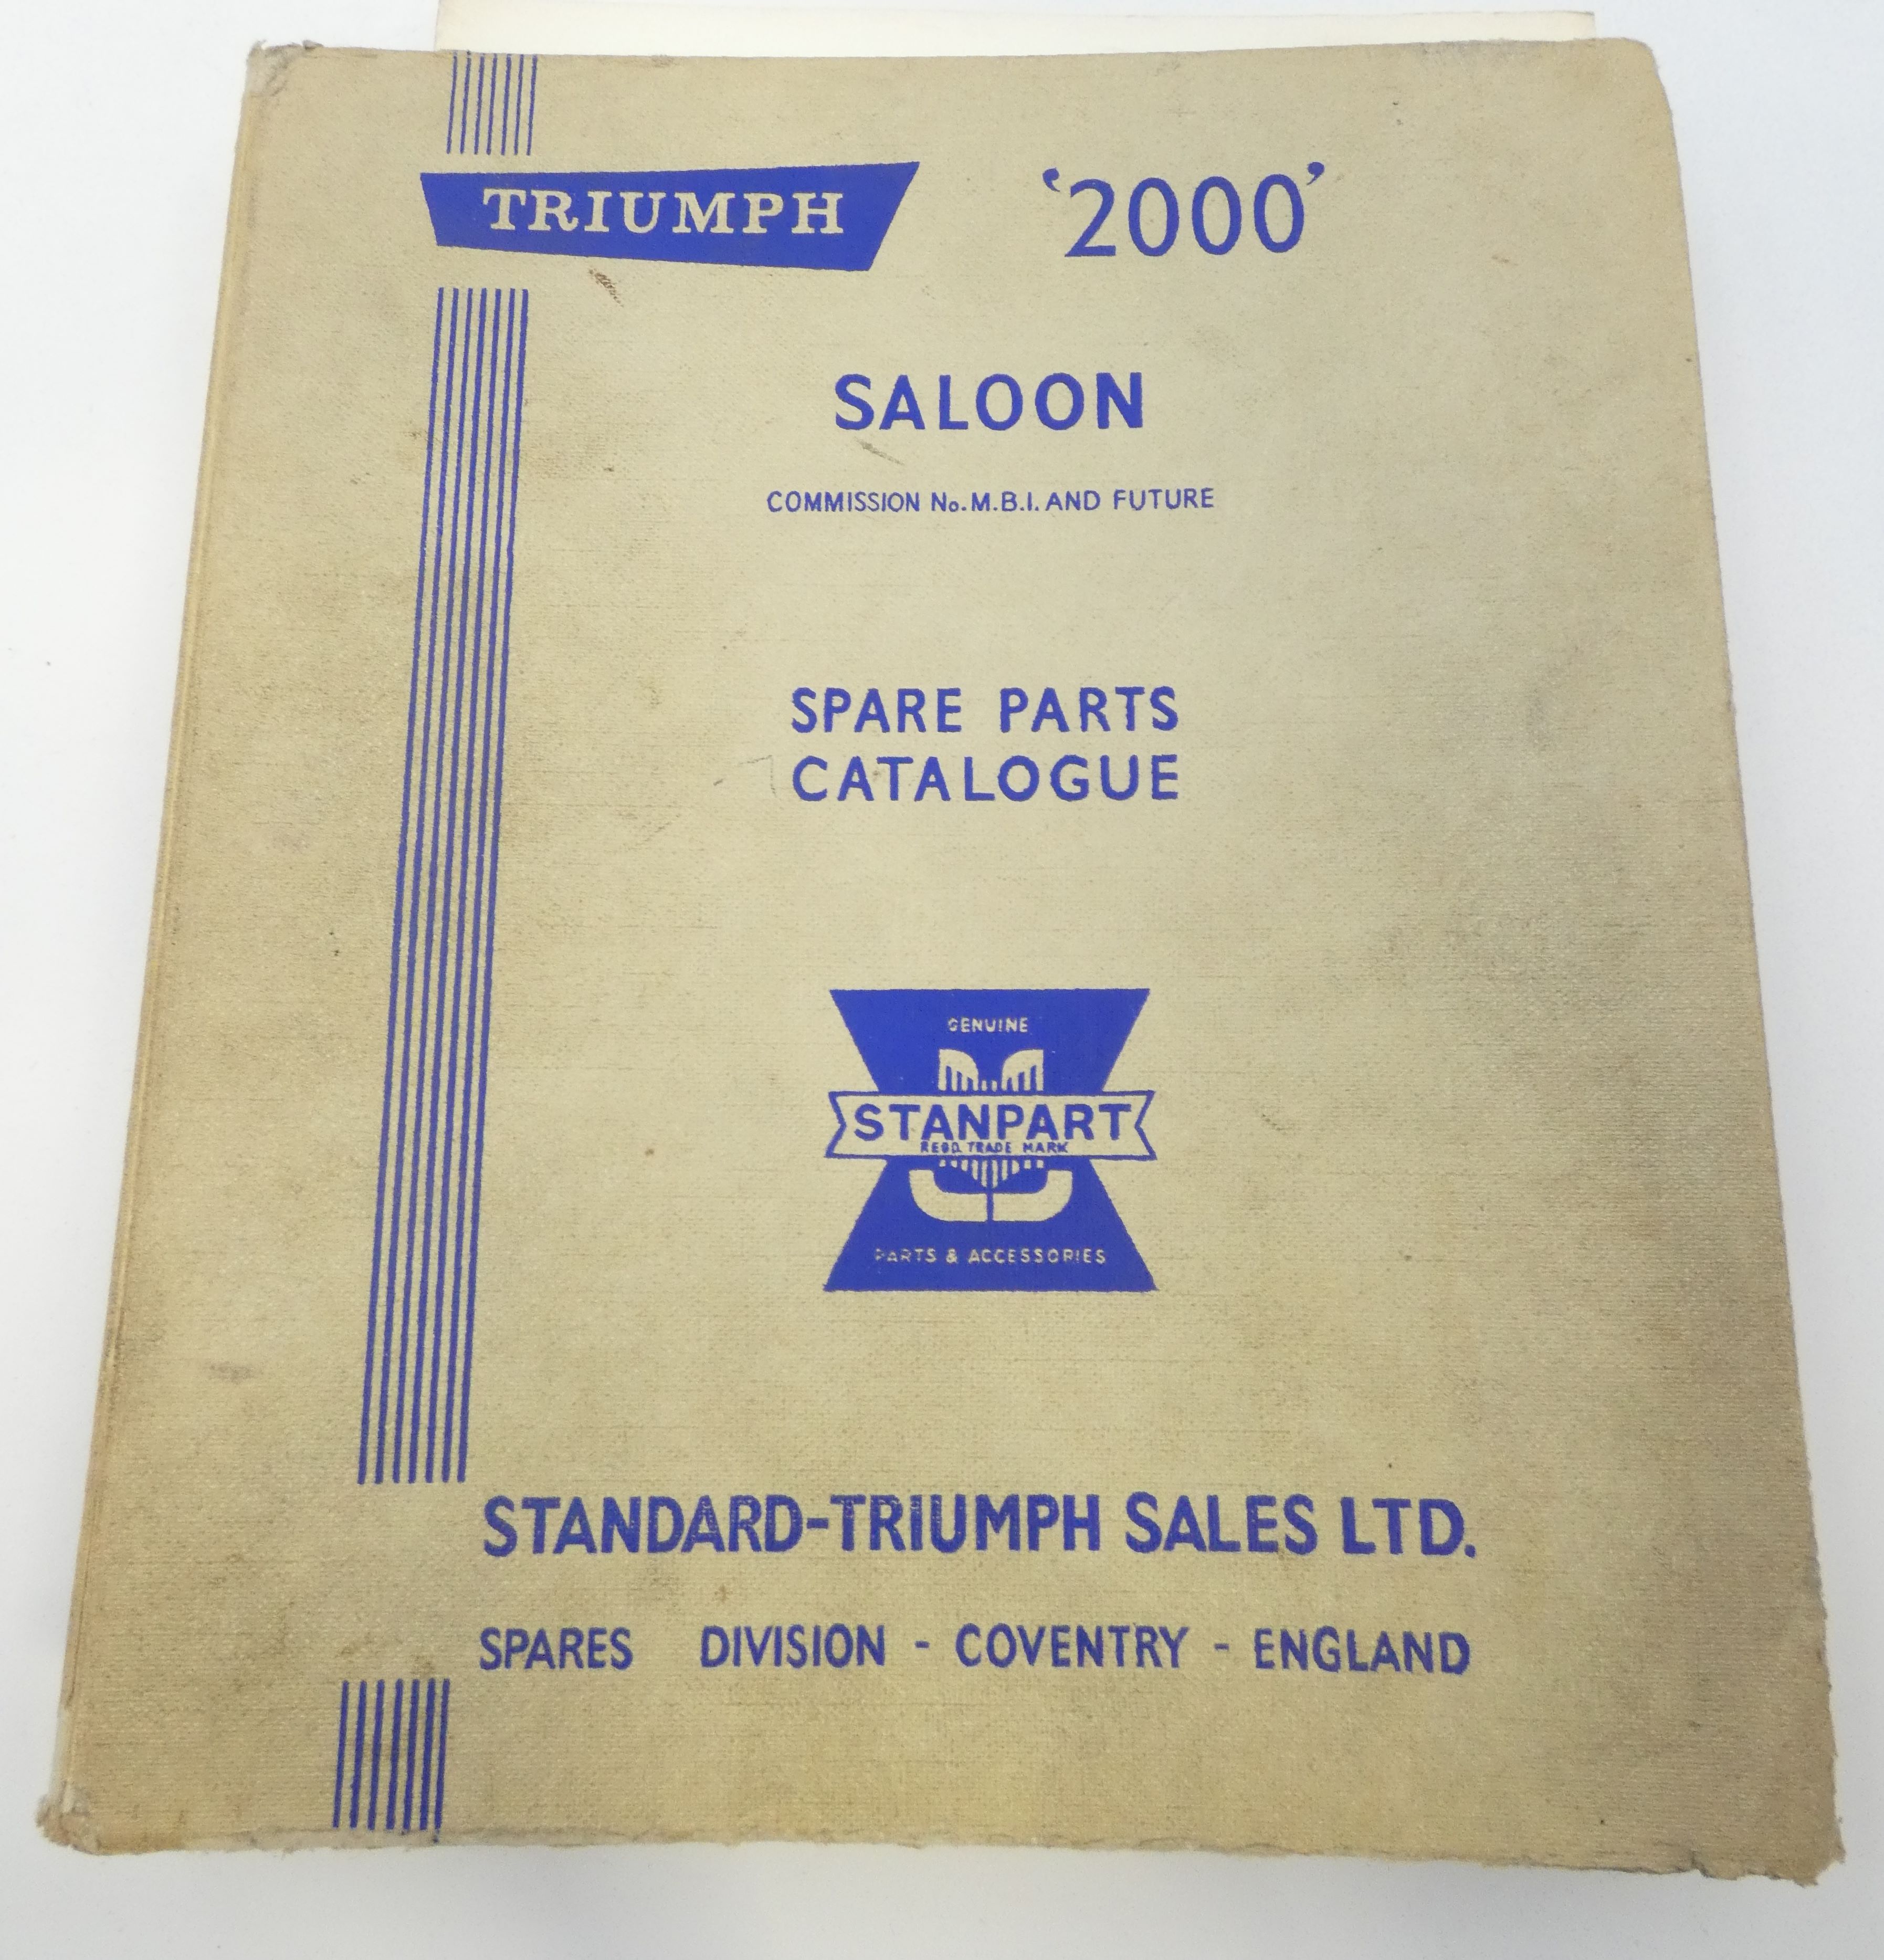 Triumph 2000 Saloon spare parts catalogue